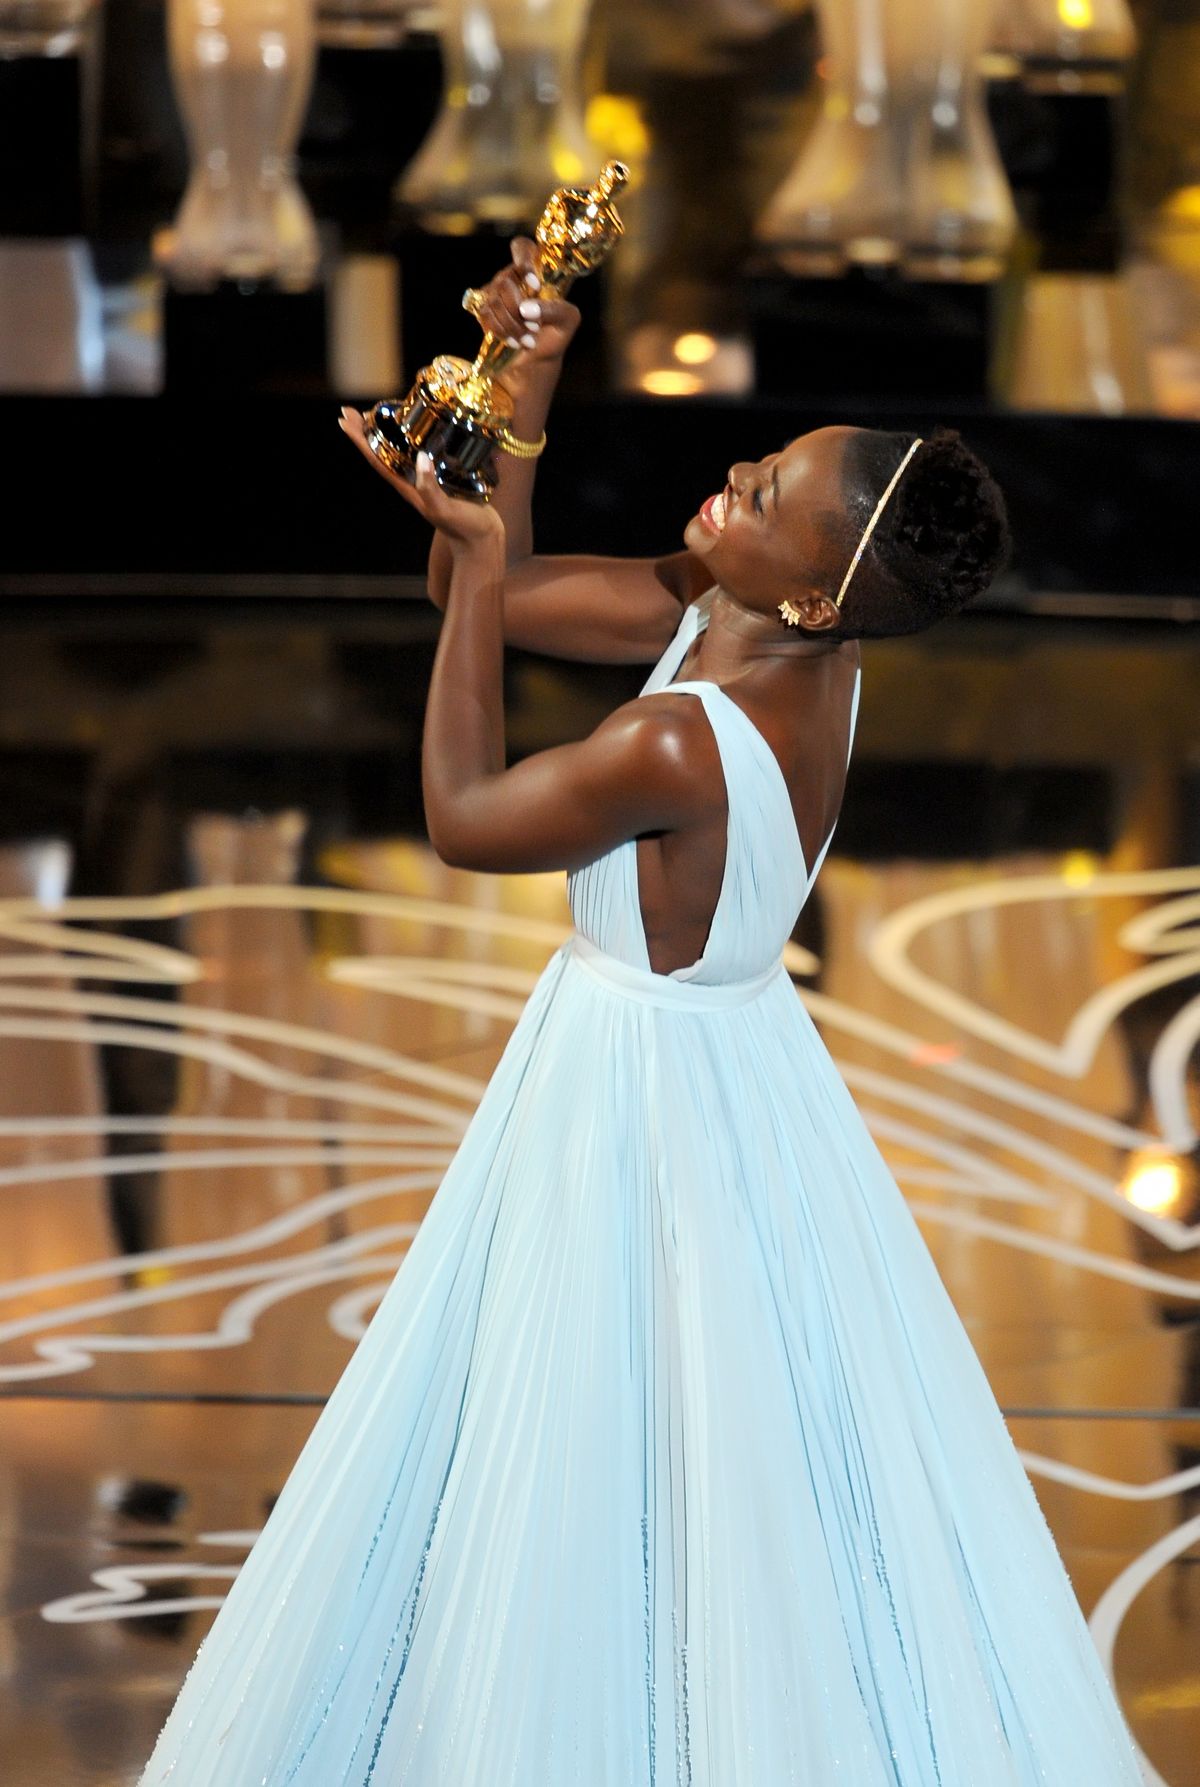 Лупита Нионго получает награду «Оскара» за лучшую роль актрисы второго плана за фильм «12 лет рабства»